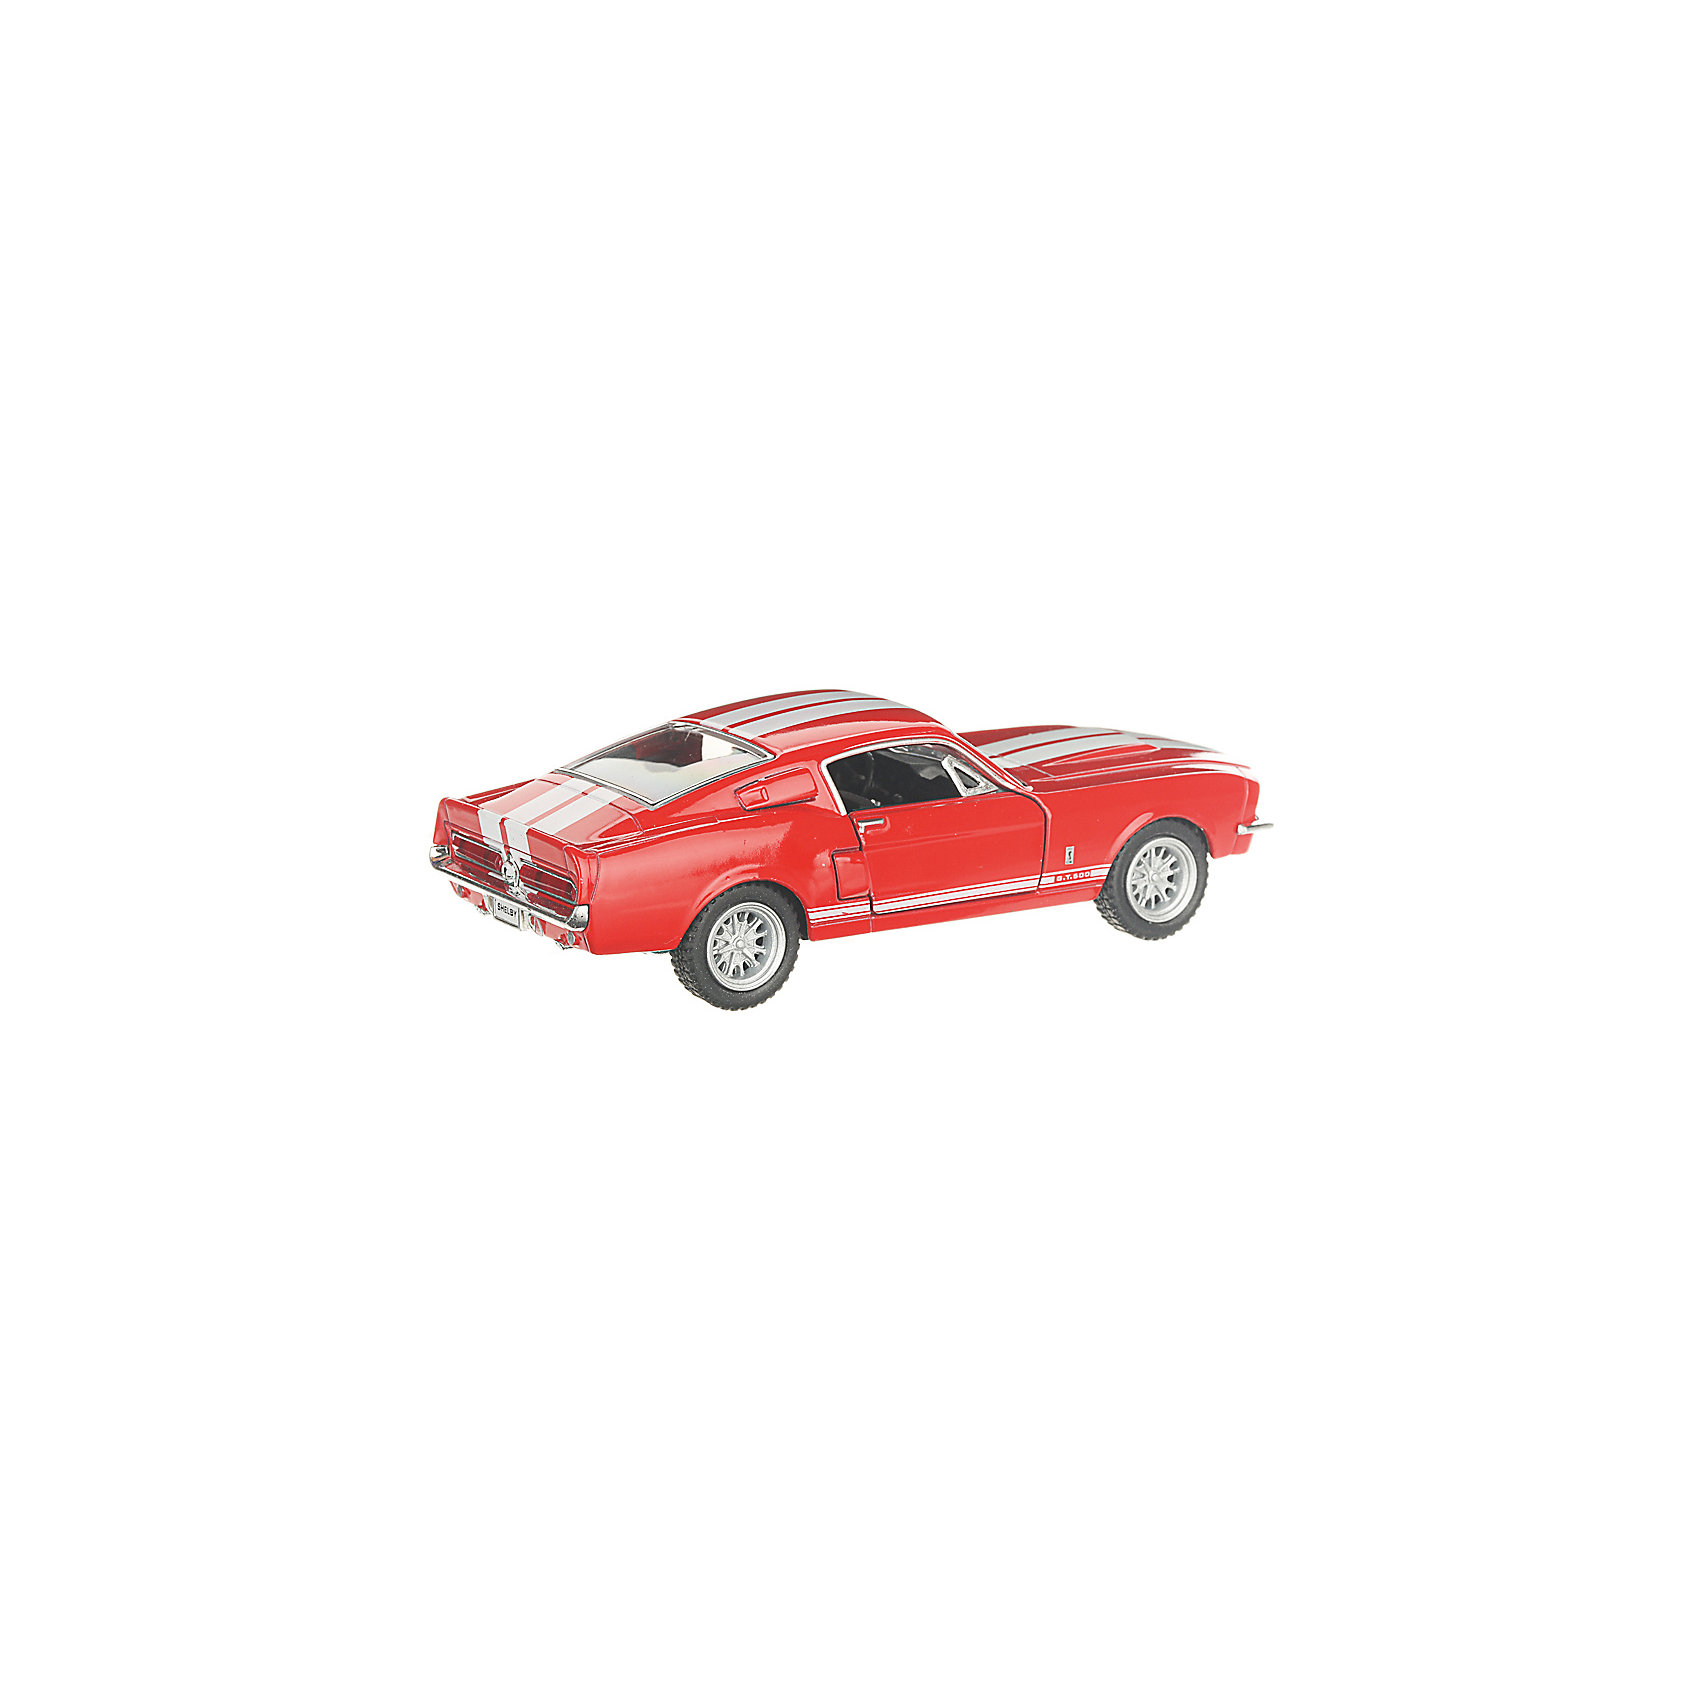 фото Коллекционная машинка Serinity Toys 1967 Shelby GT500, красная